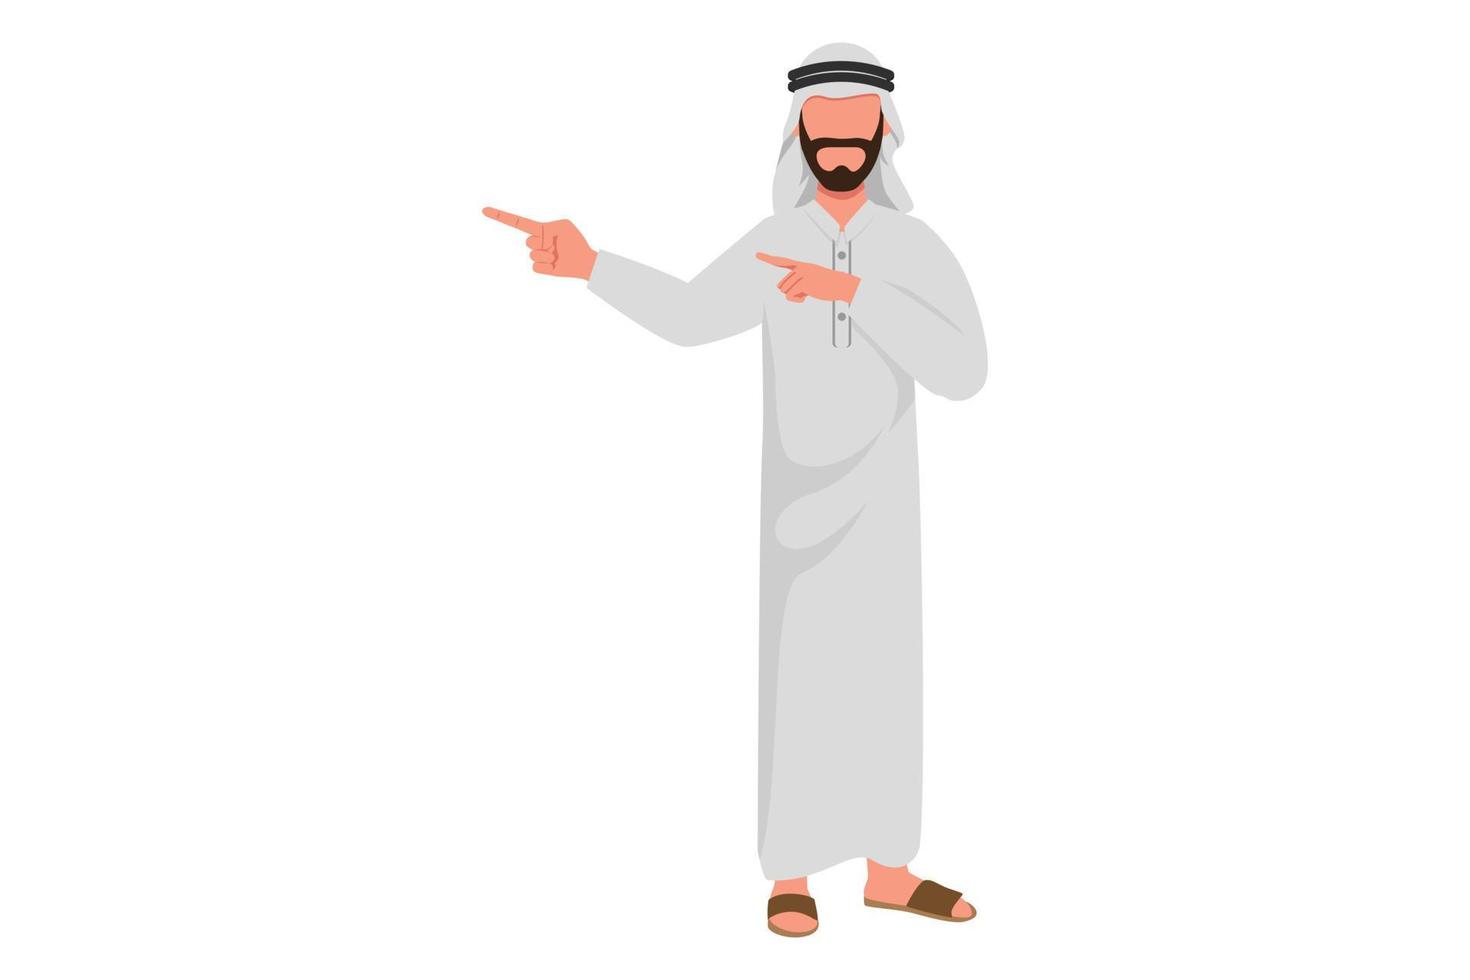 Business-Design-Zeichnung arabischer Geschäftsmann, der die Hände zusammen wegzeigt, etwas zeigt oder präsentiert, während er steht und lächelt. Büroangestellter präsentieren Produkt. flache Cartoon-Stil-Vektor-Illustration vektor